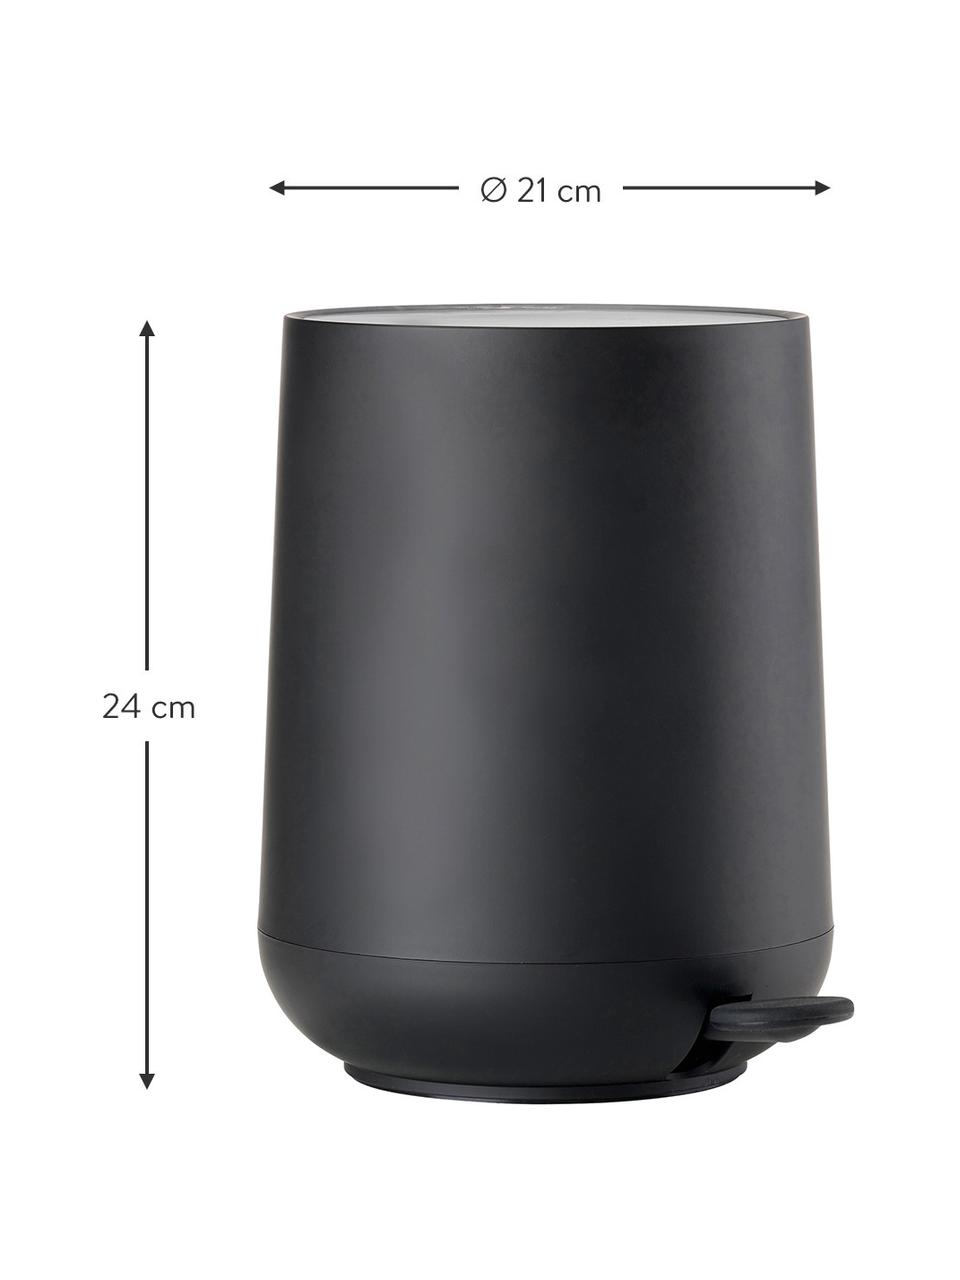 Afvalemmer Nova met softmotion deksel in zwart, ABS-kunststof, Zwart, 3 L